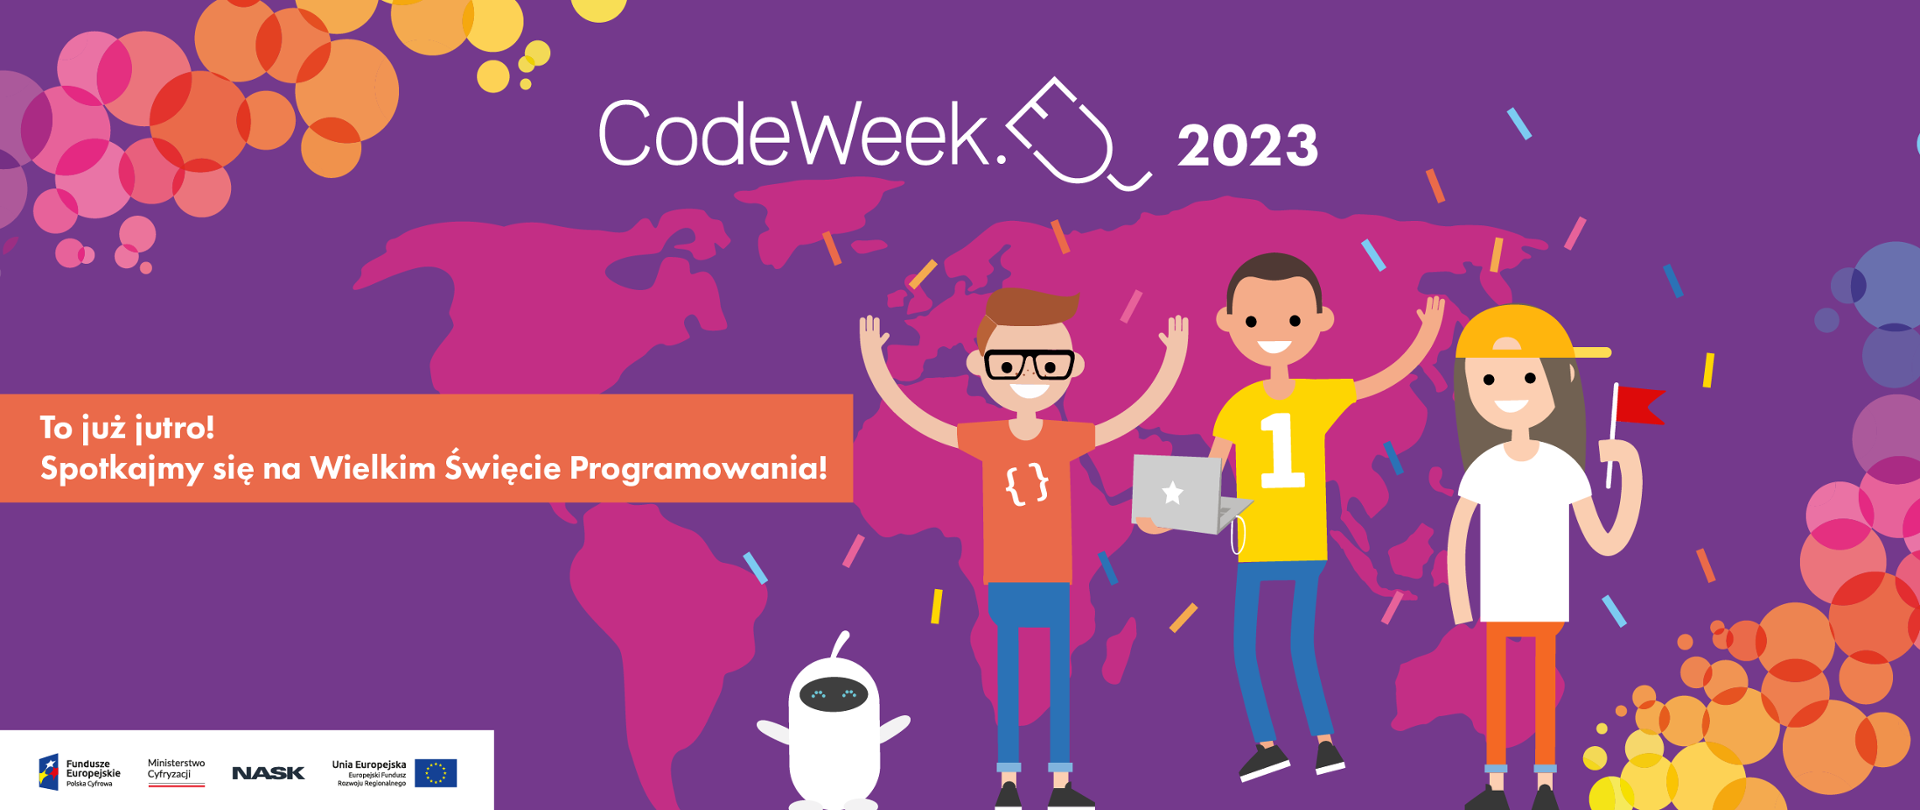 Grafika wektorowa z tekstem: CodeWeek 2023. To już jutro! Spotkajmy się na Wielkim Święcie Programowania. Na dole logotypy: Fundusze Europejskie, Ministerstwo Cyfryzacji, NASK, Unia Europejska.